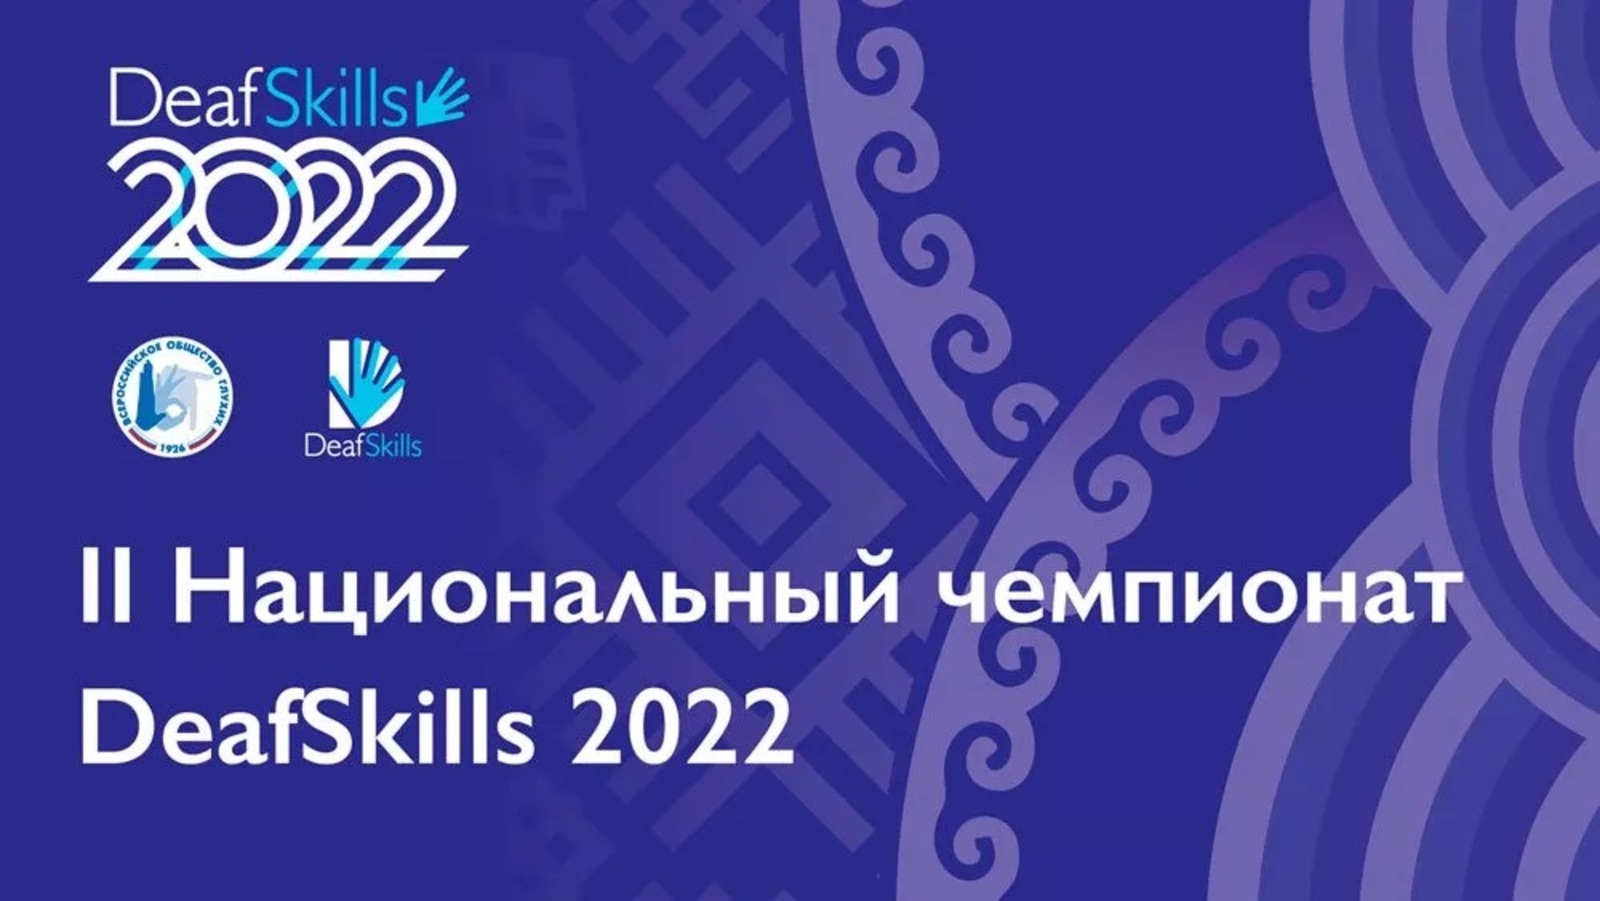 Уфа станет местом проведения второго российского чемпионата глухих и слабослышащих людей DeafSkills